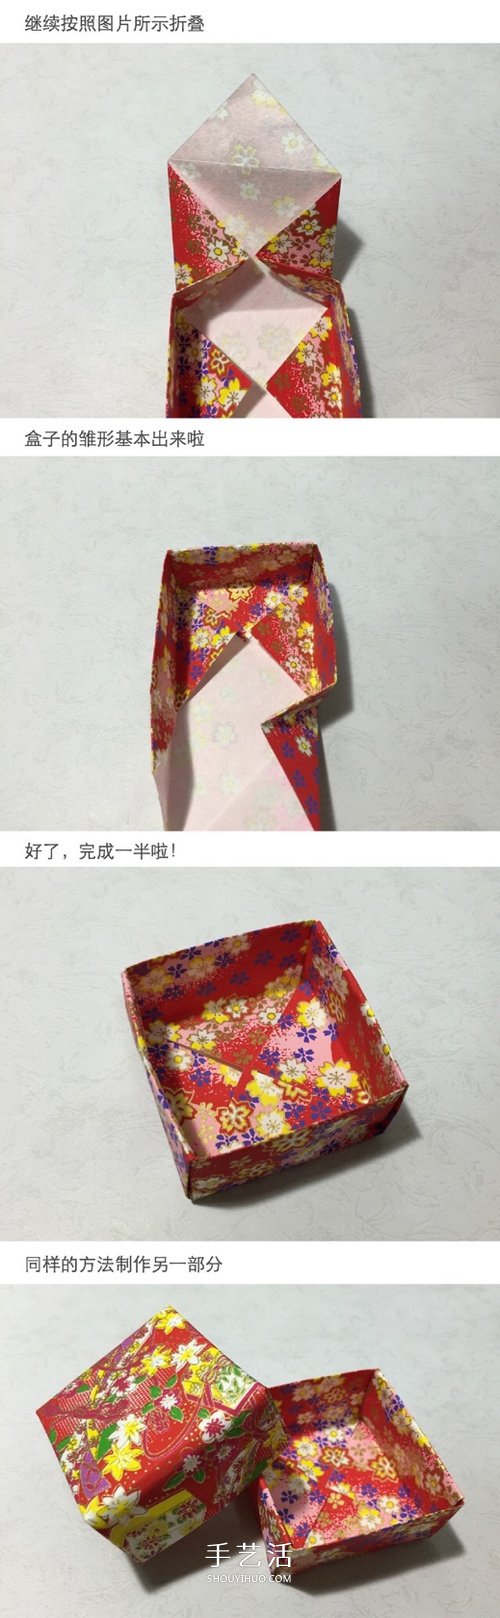 简单又好看的方形礼盒手工折纸图解教程 -  www.shouyihuo.com